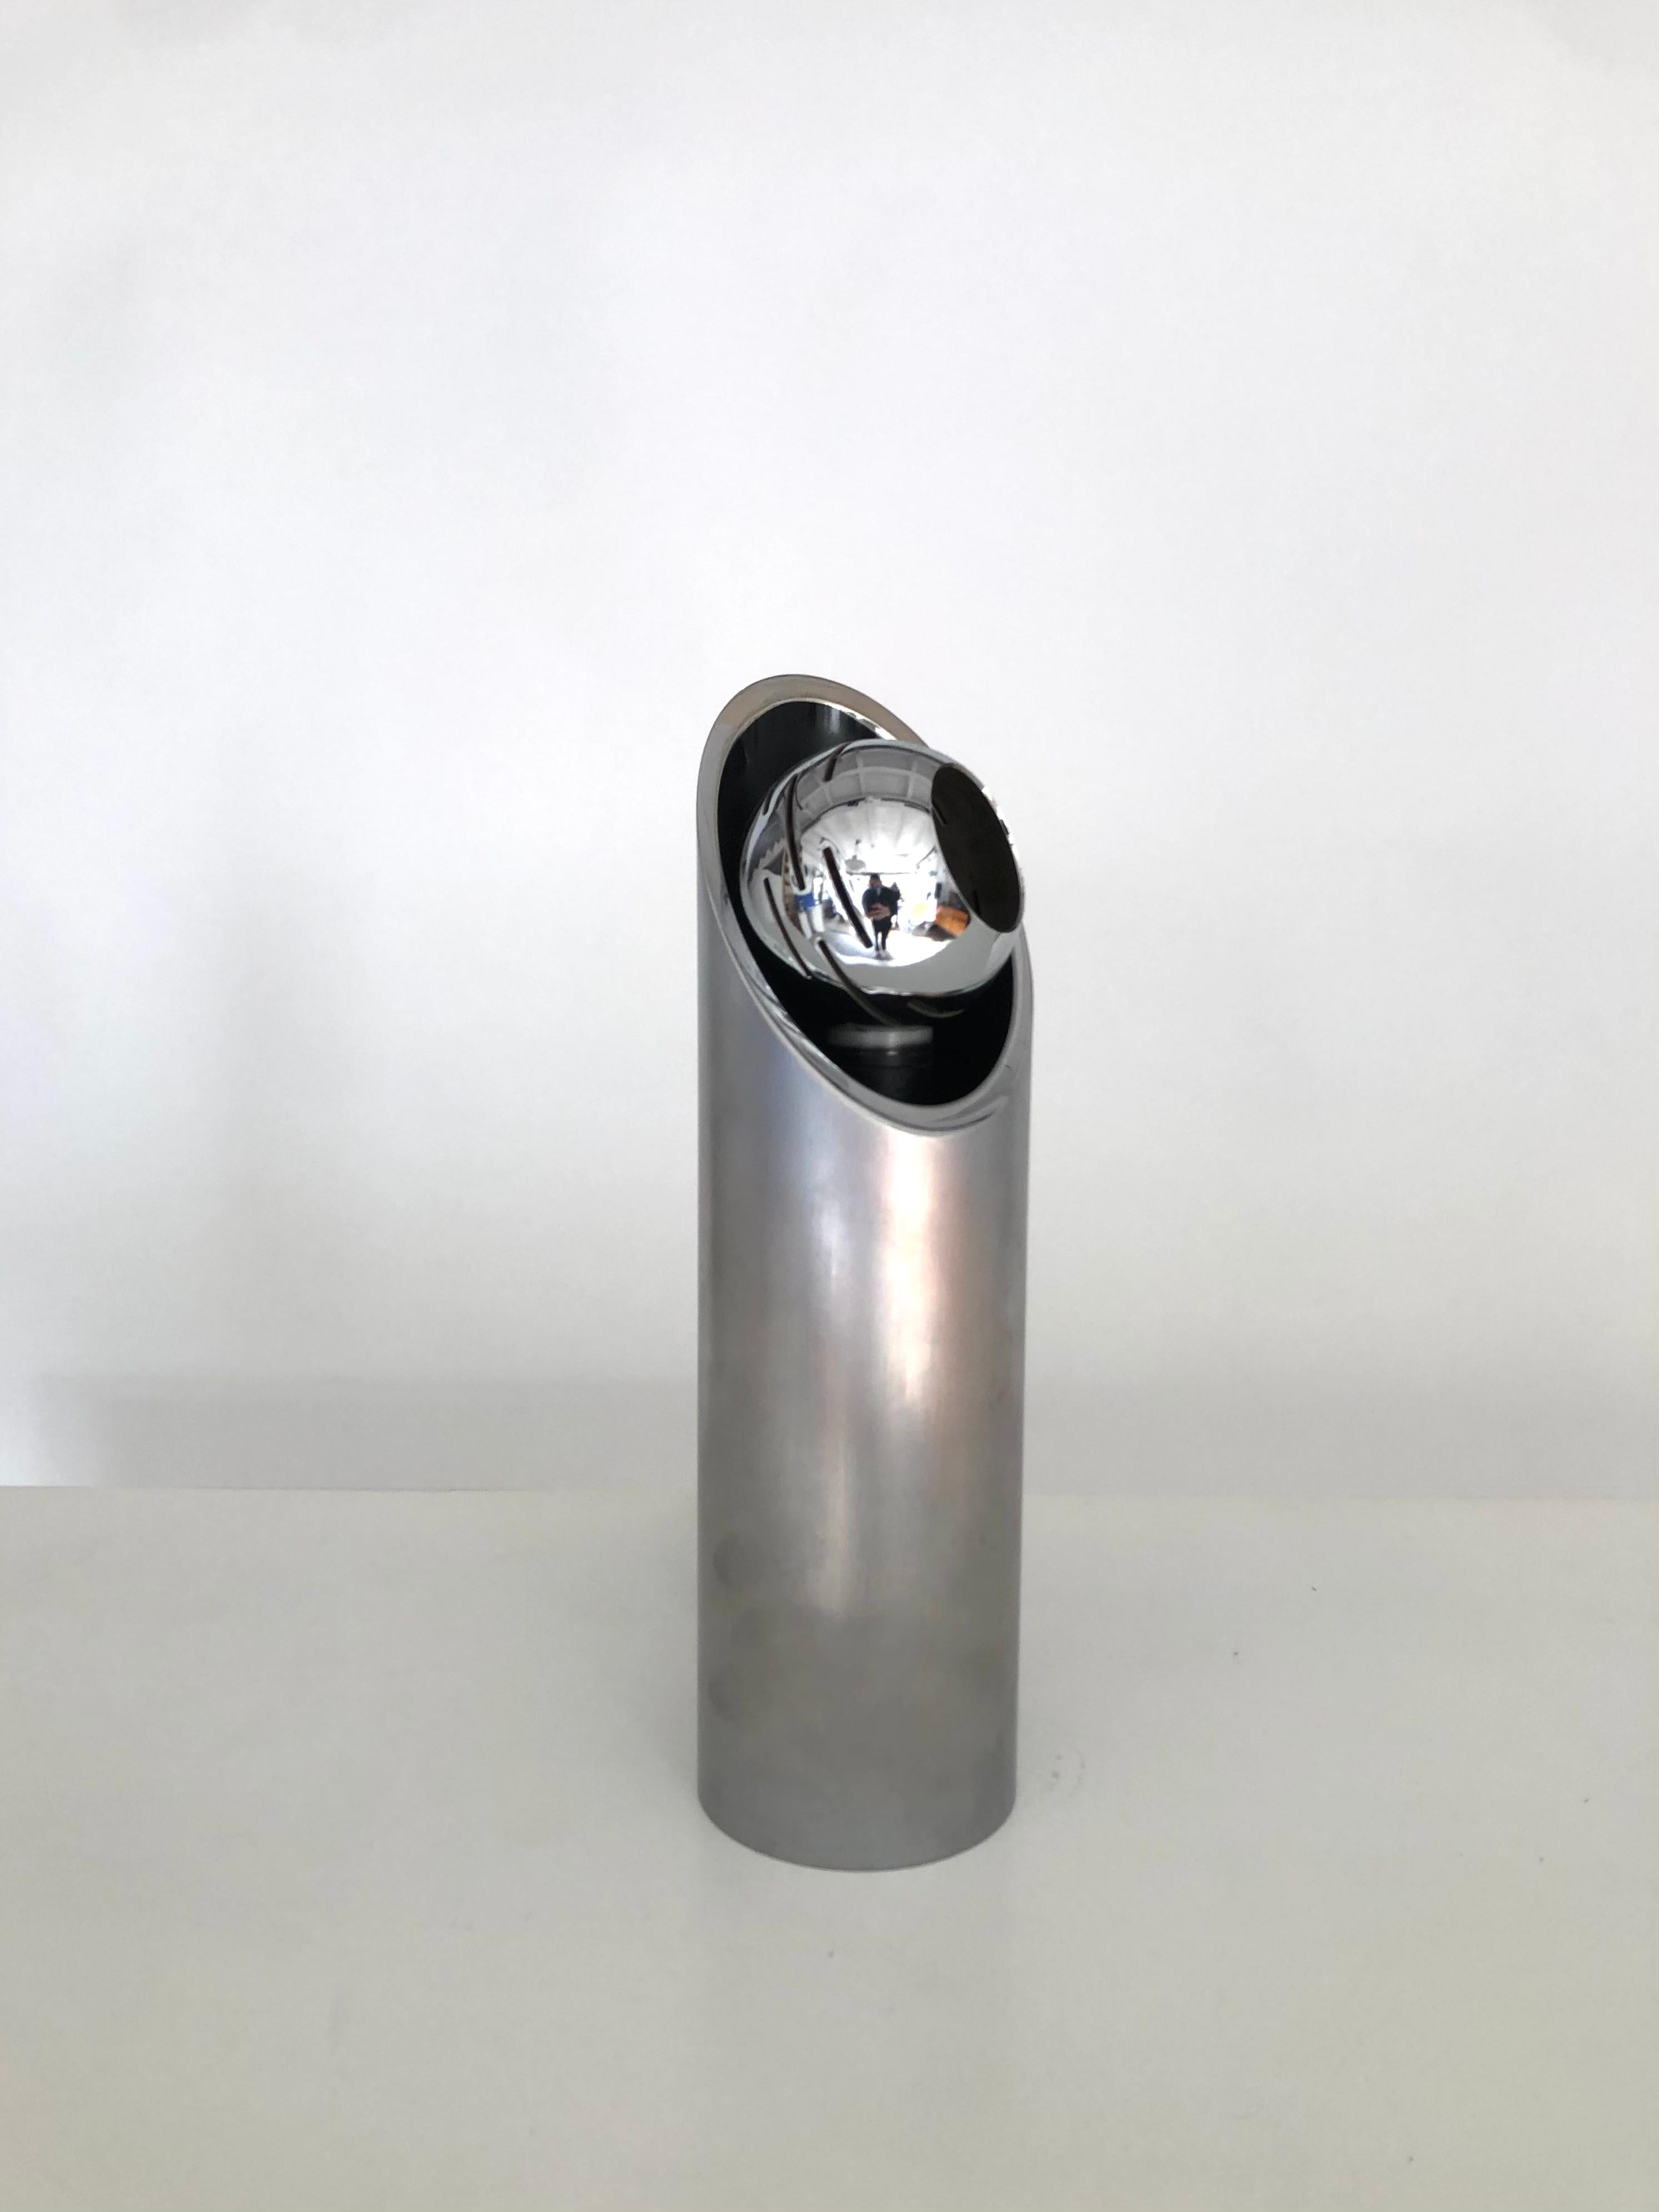 Tischlampe von Angelo Lelii
 Modell n ° 14082 sagte Bambu
 Tischlampe
 Metall und verchromtes Metall
 Arredoluce Ausgabe